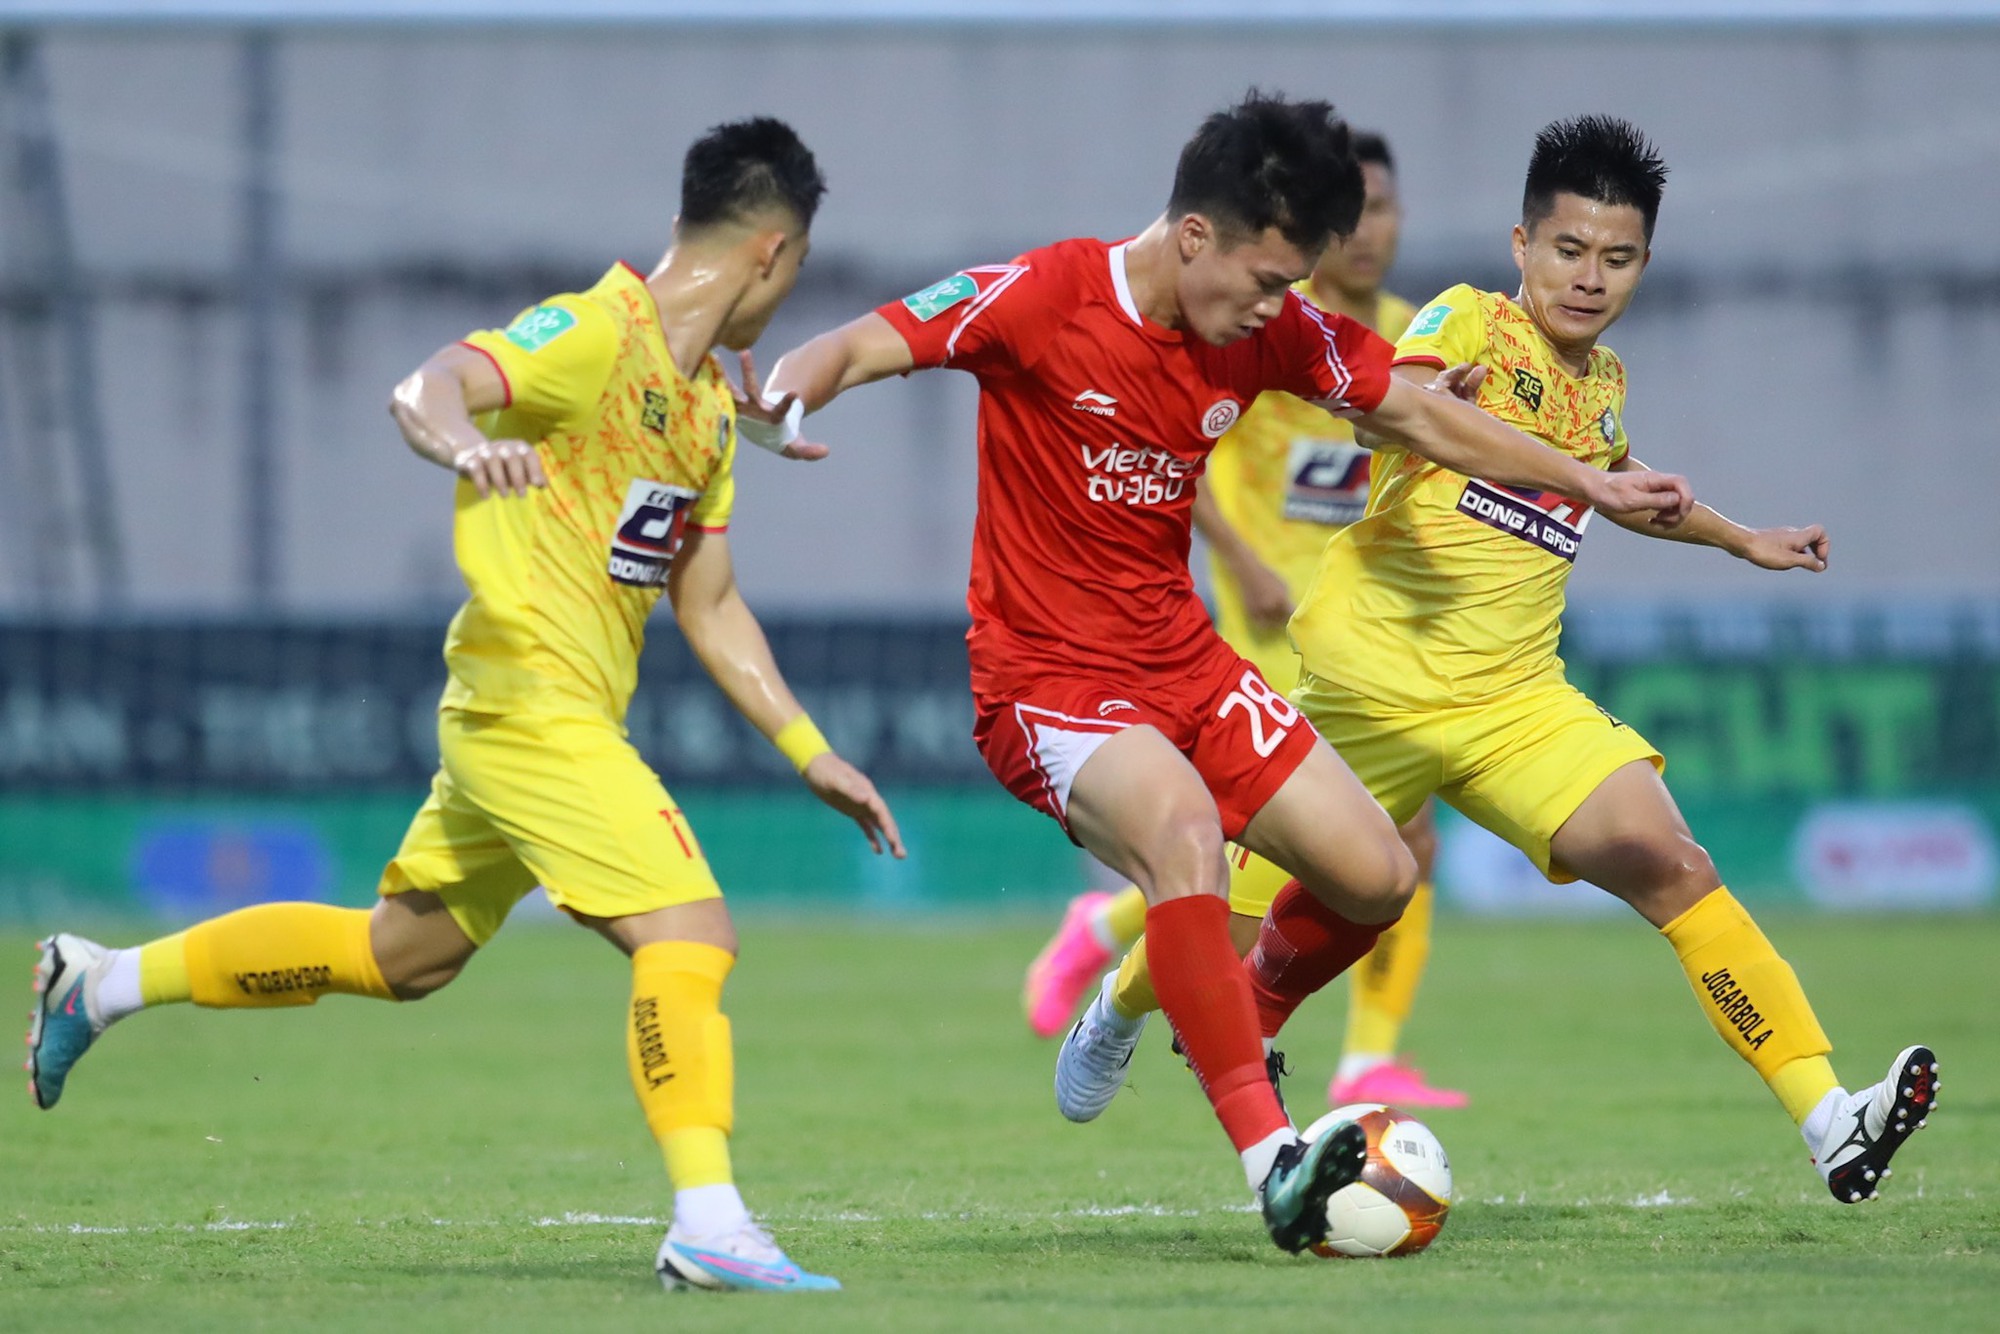 CLB Thanh Hóa vô địch Cúp quốc gia sau loạt đá luân lưu nghẹt thở - Ảnh 2.